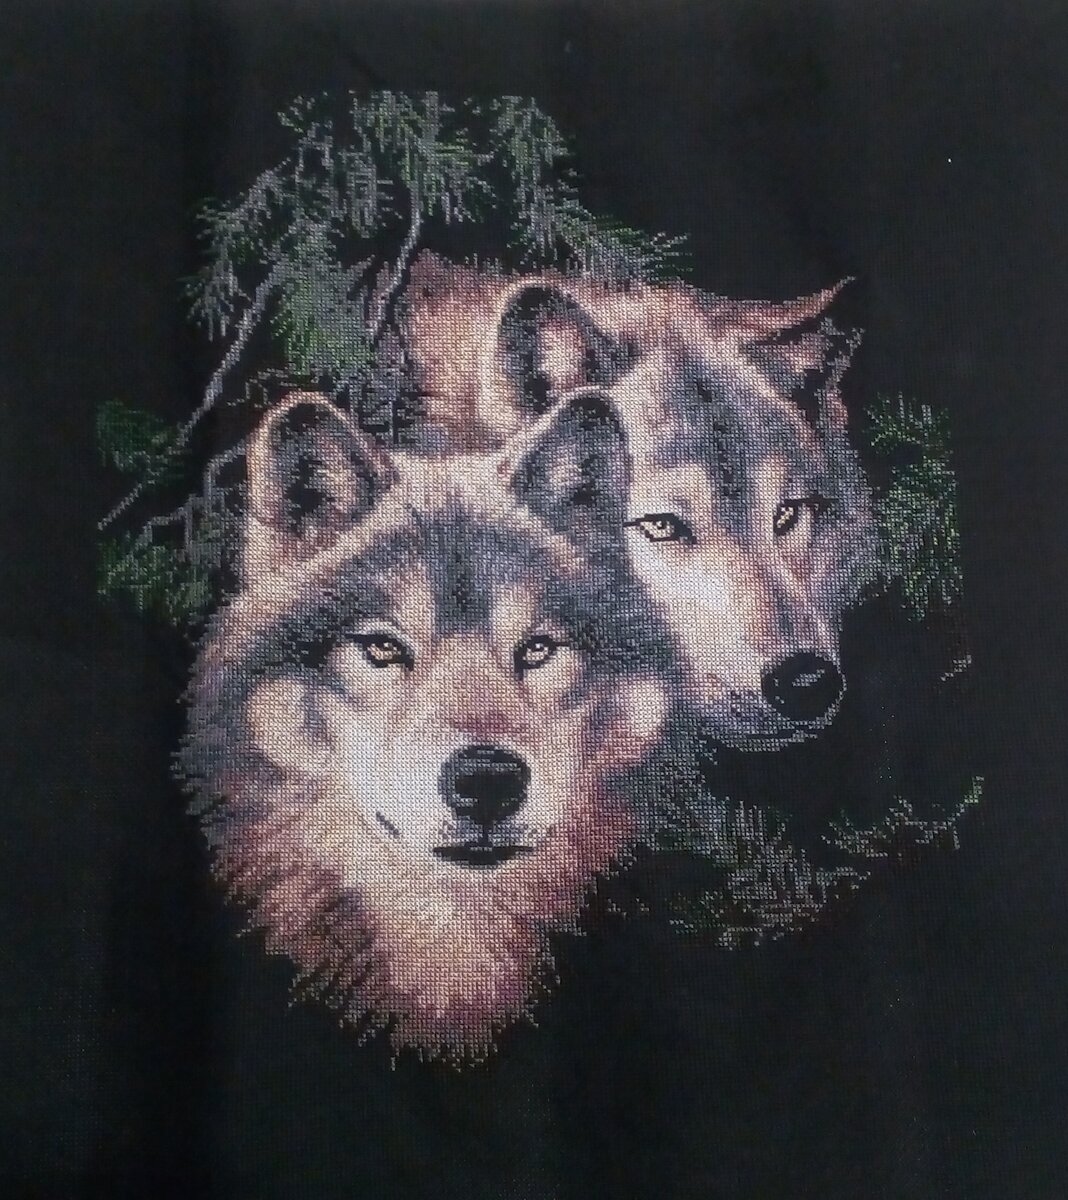 Обзор наборов для вышивки на тему «Волки».